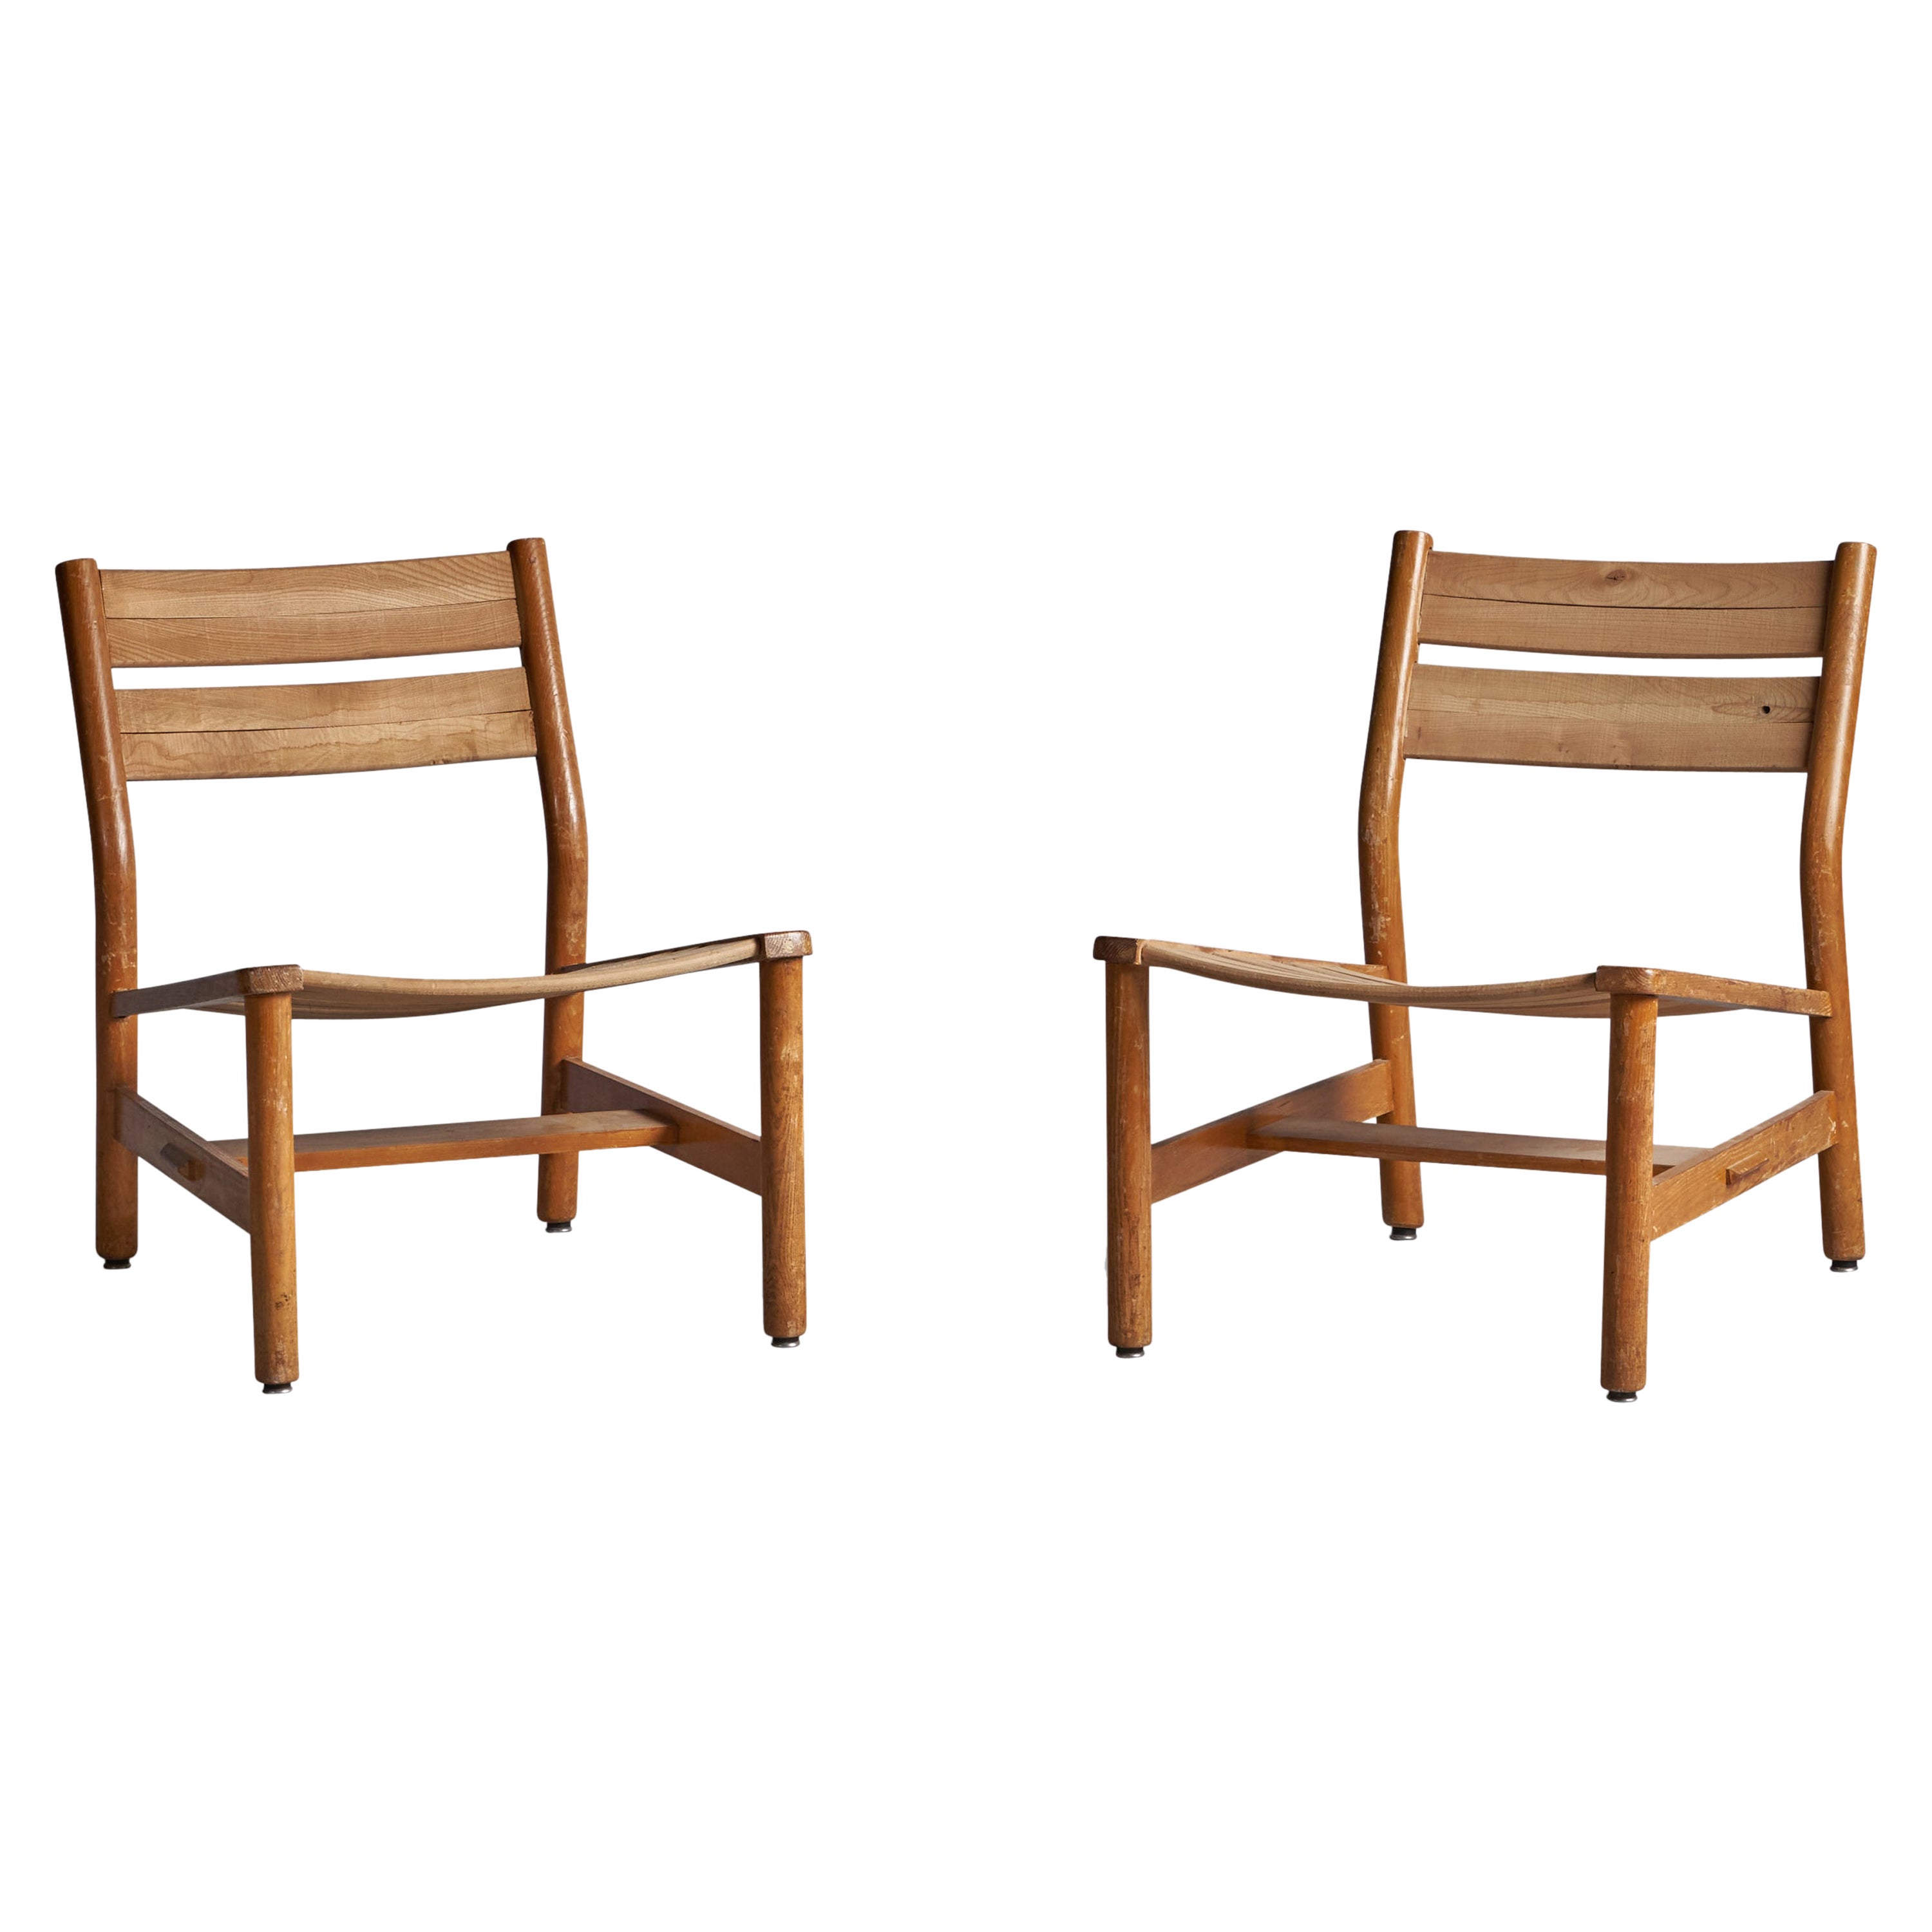 Pierre Gautier Delaye, Slipper Chairs, Oak, France, 1950s For Sale